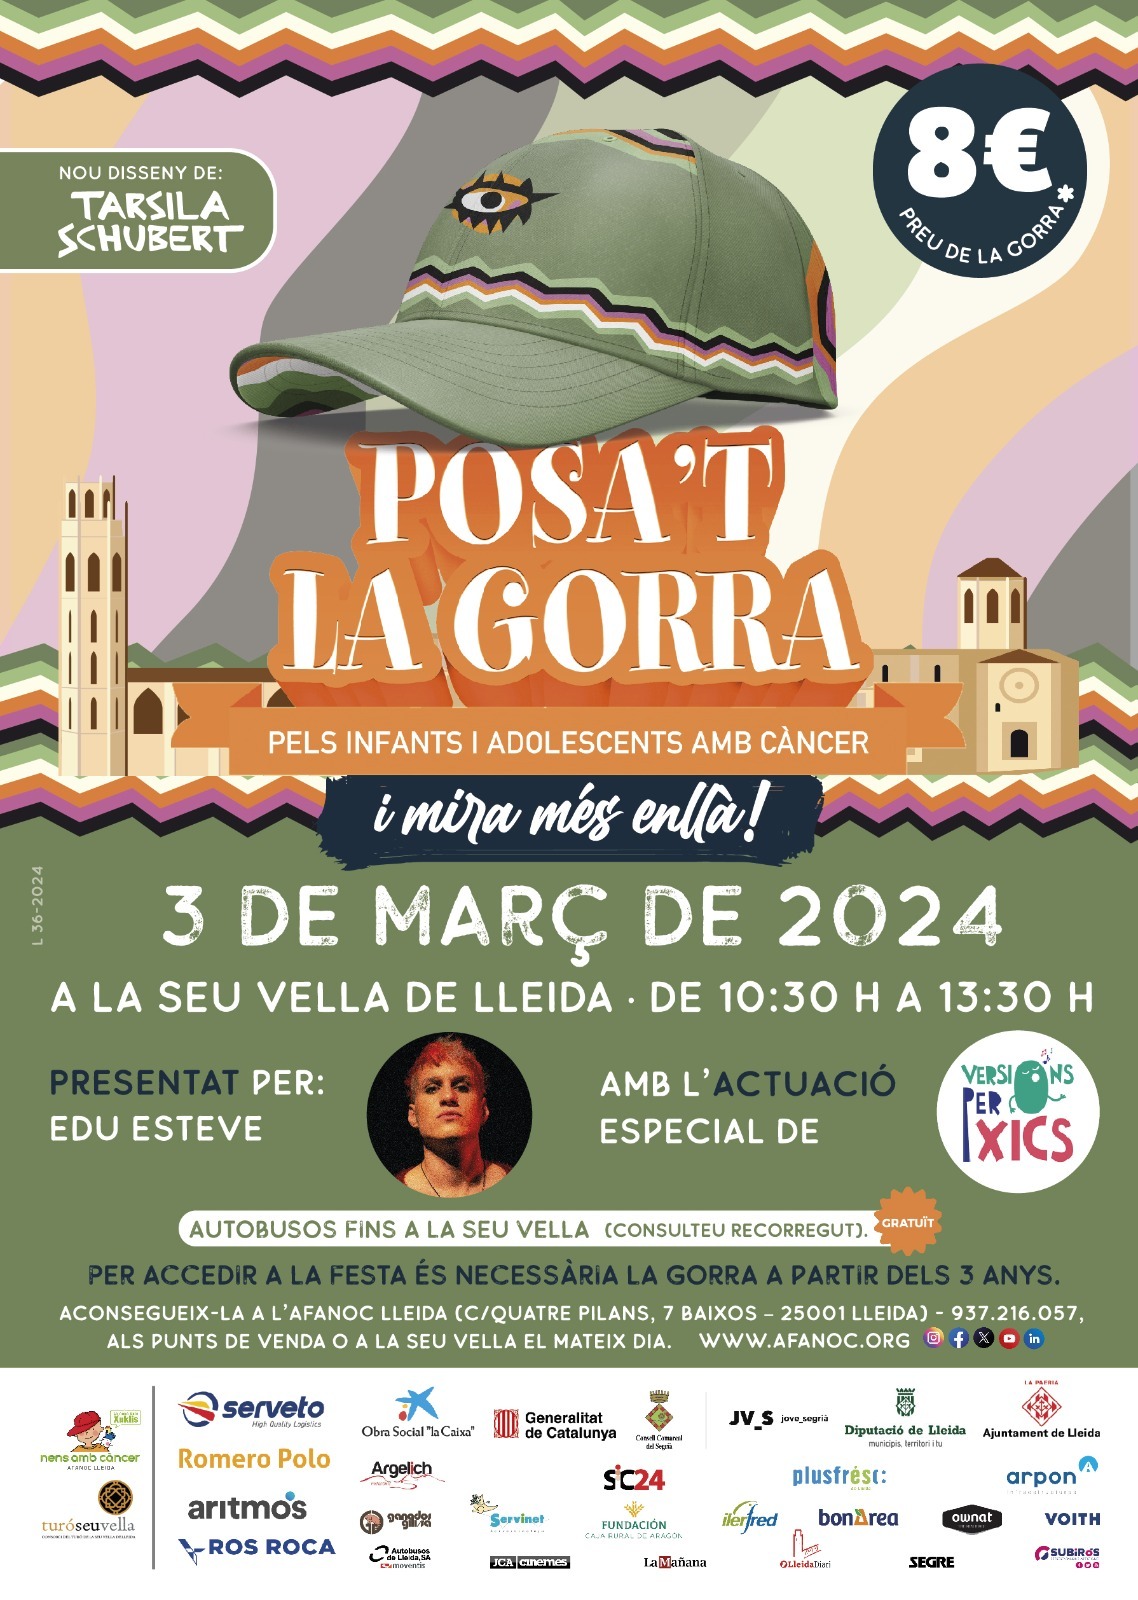 Posa't la gorra a Lleida 2024- que fer a Lleida- tallers infantils - que fer amb nens - que fer amb nens avui - que fer amb nens aquest cap de setmana